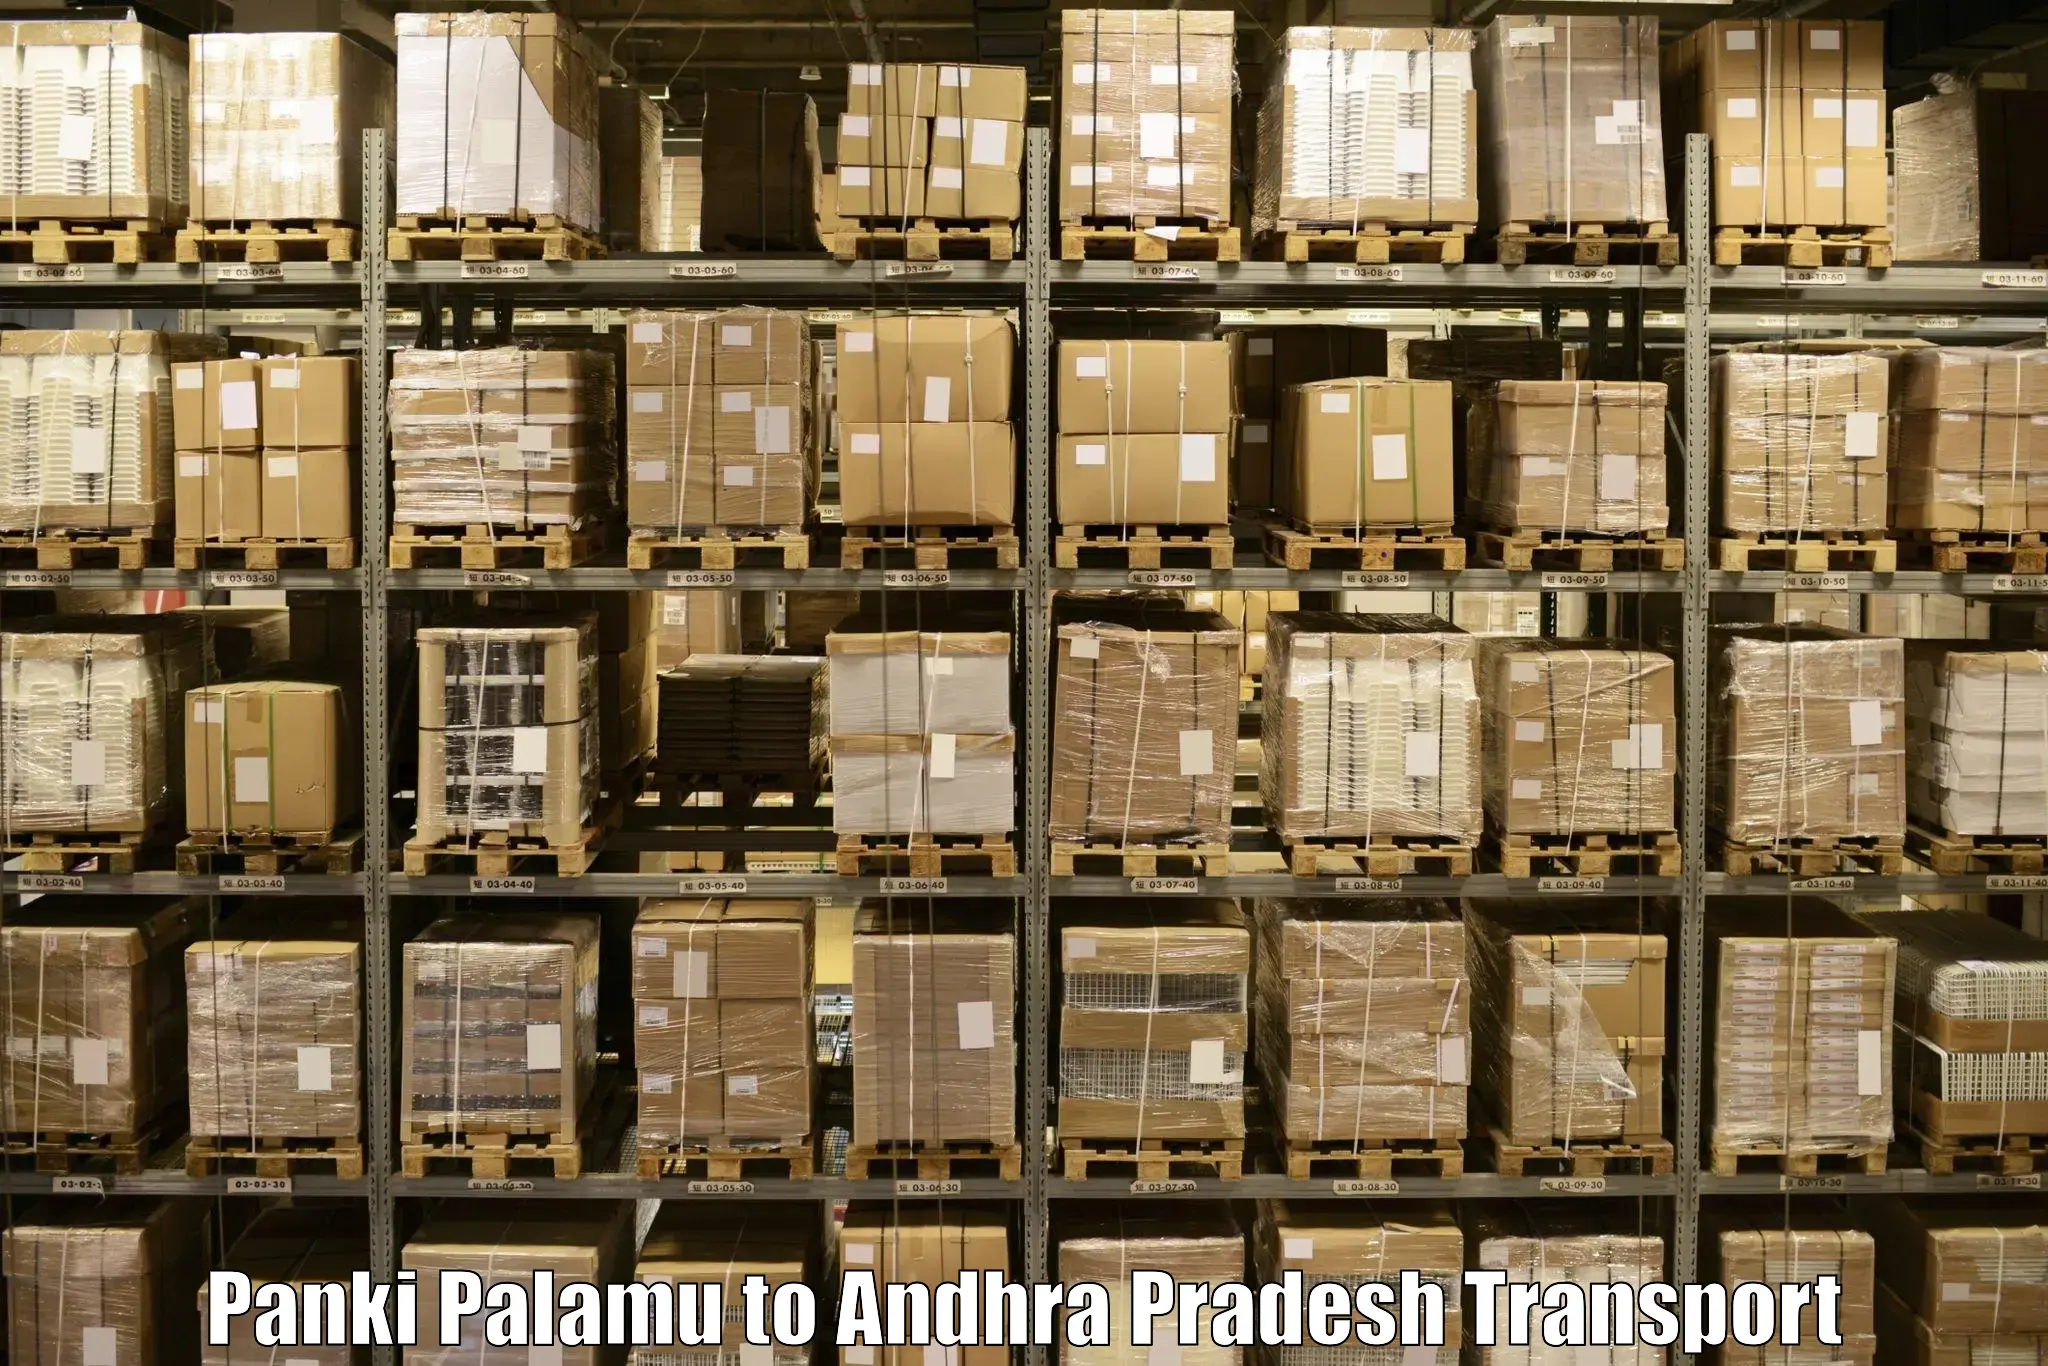 Nationwide transport services Panki Palamu to Andhra Pradesh